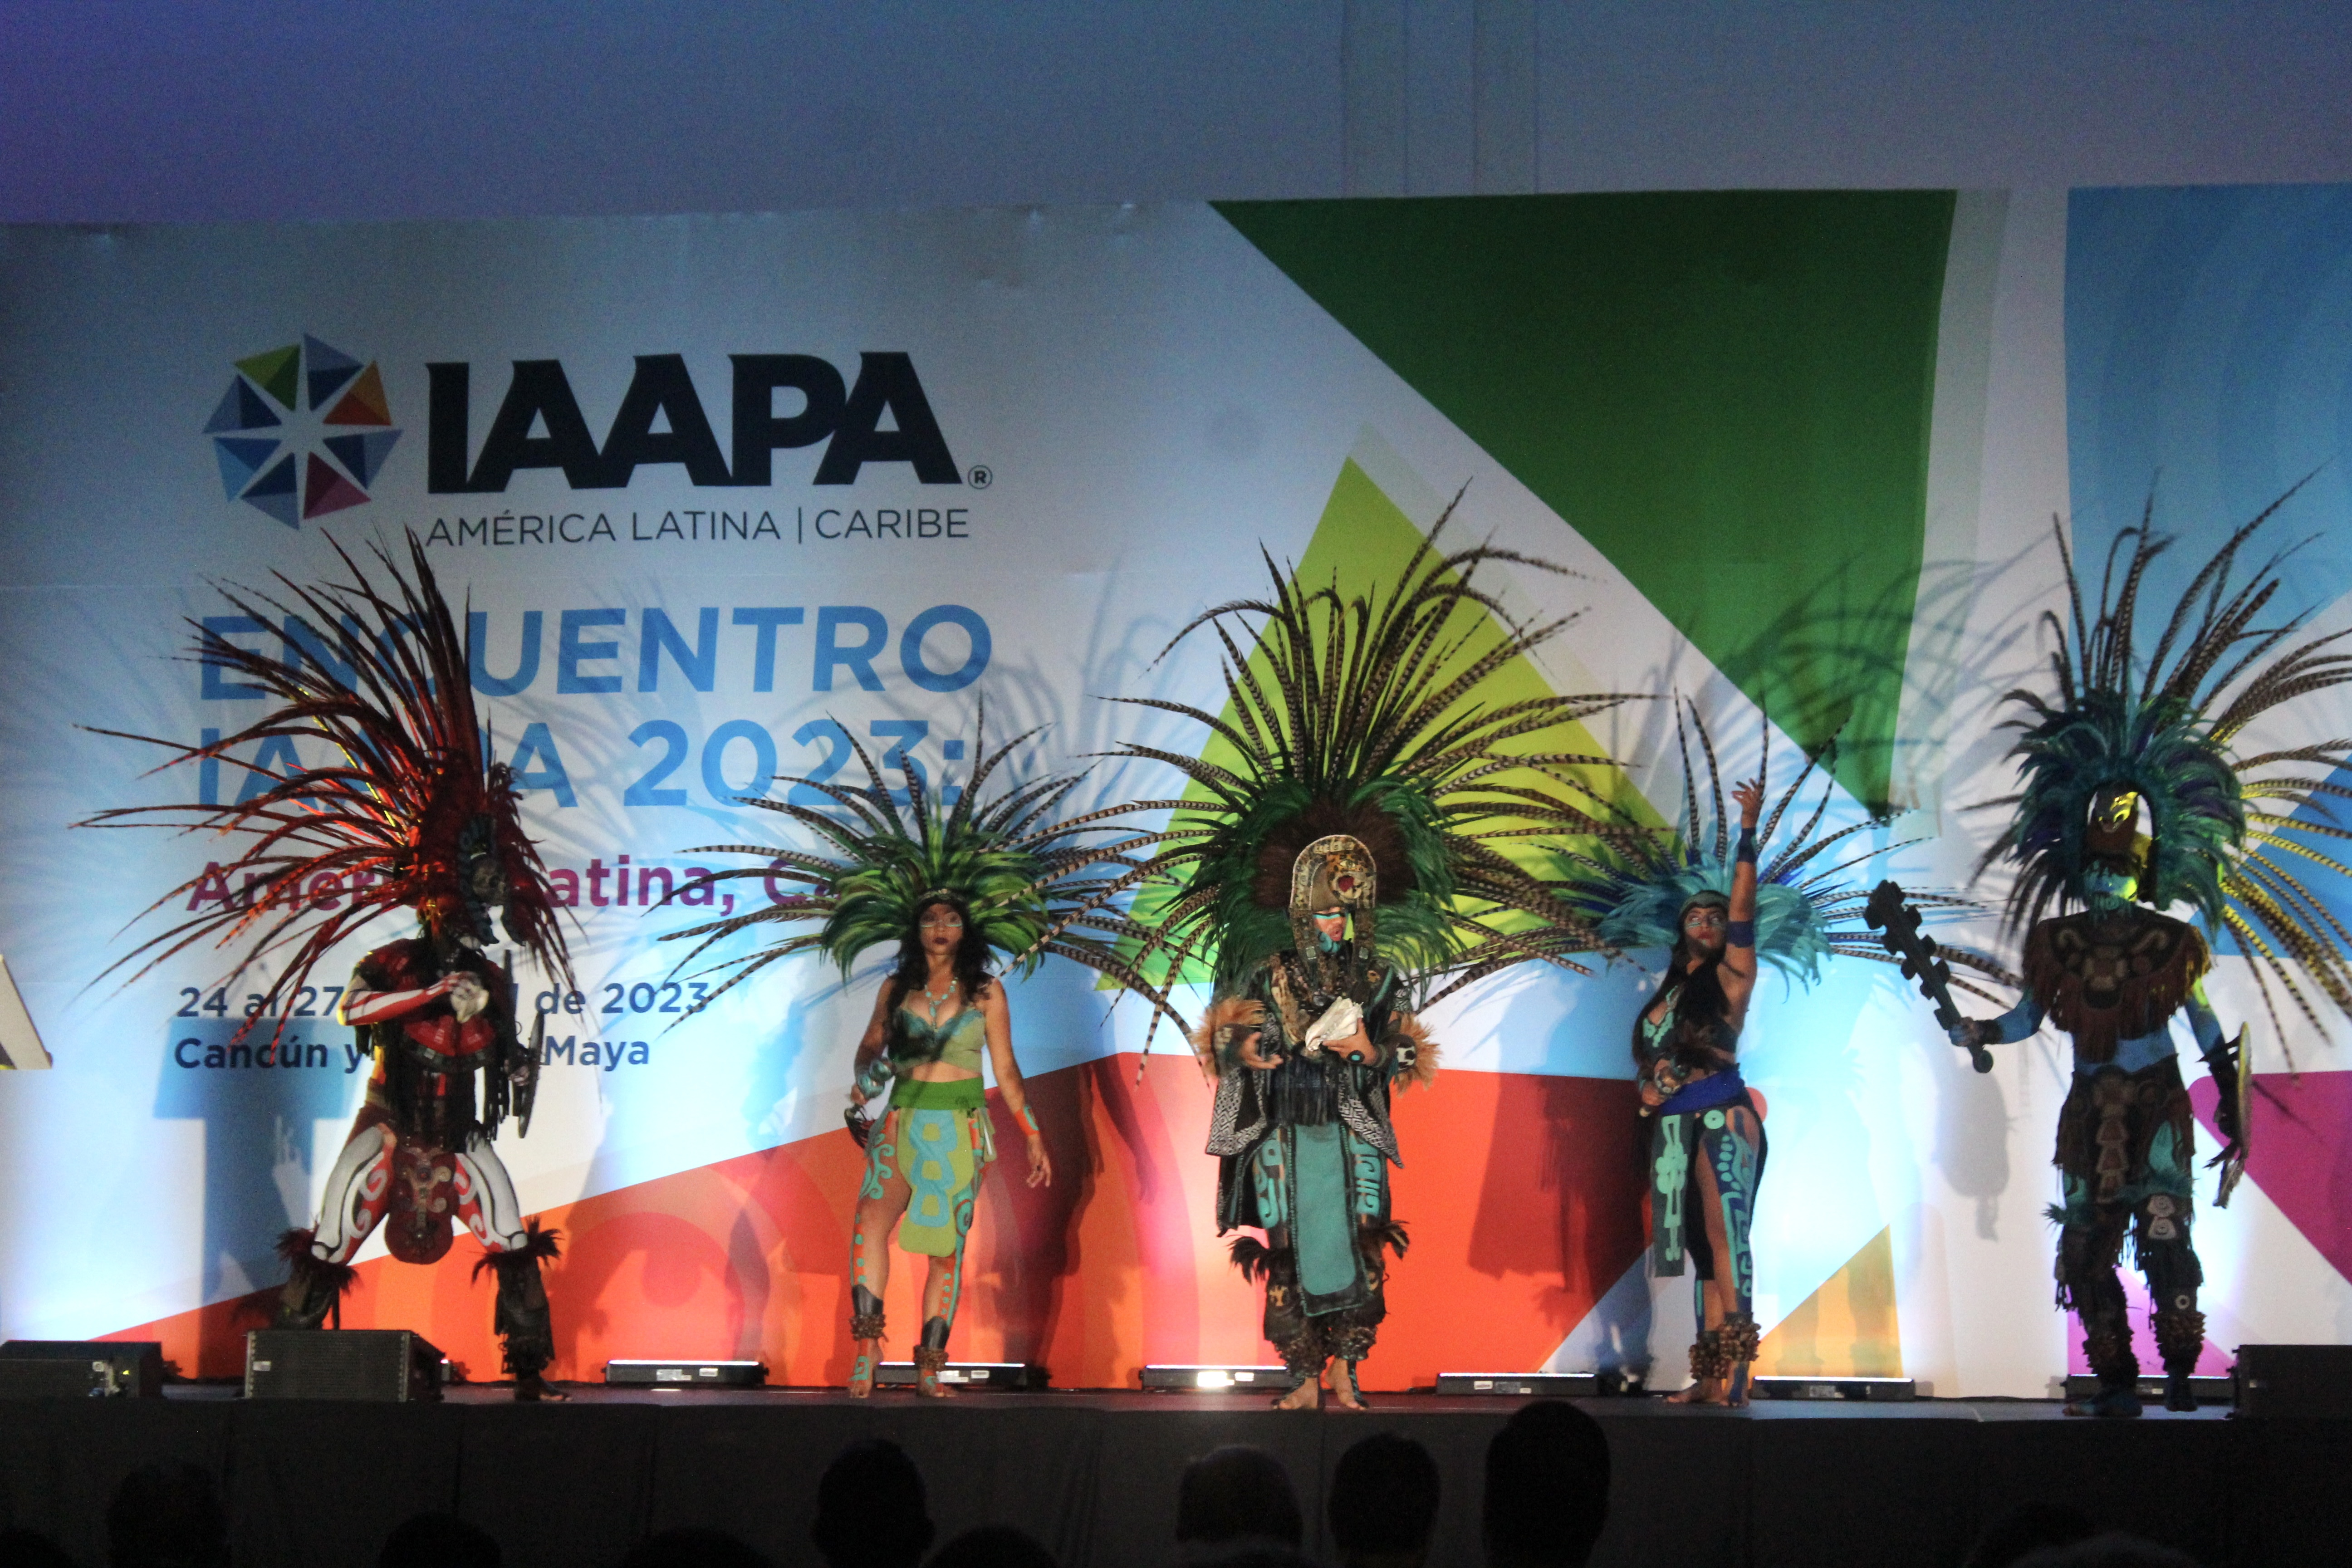 "Bailarines interpretan Concheros mexicanos regionales para abrir la Cumbre de América Latina de IAAPA".